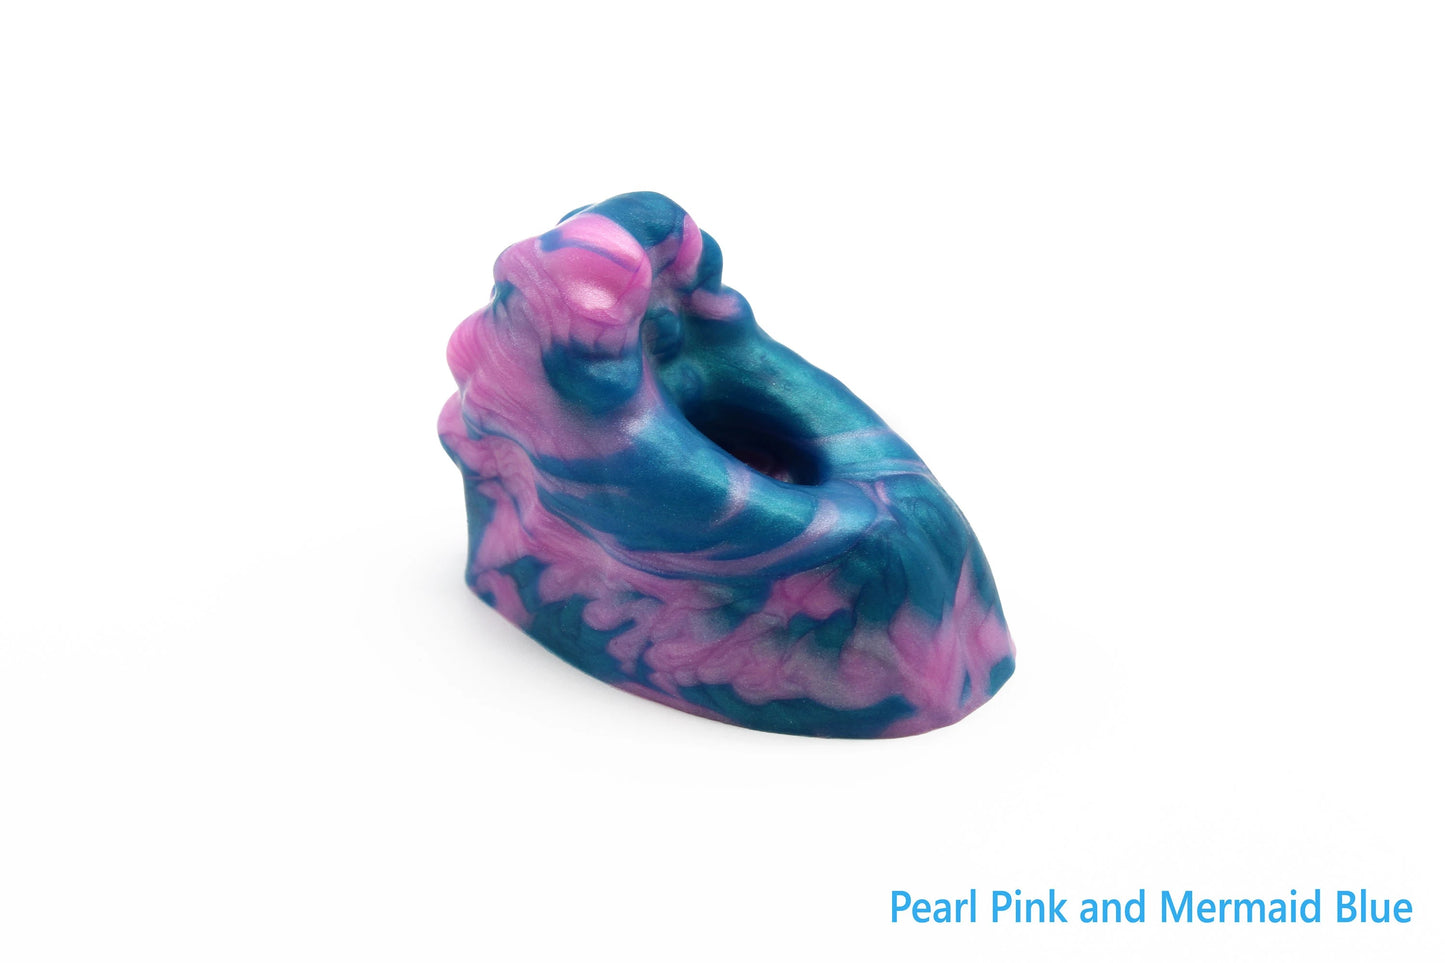 The Pearl Pink & Mermaid Blue Fingo Grinder.